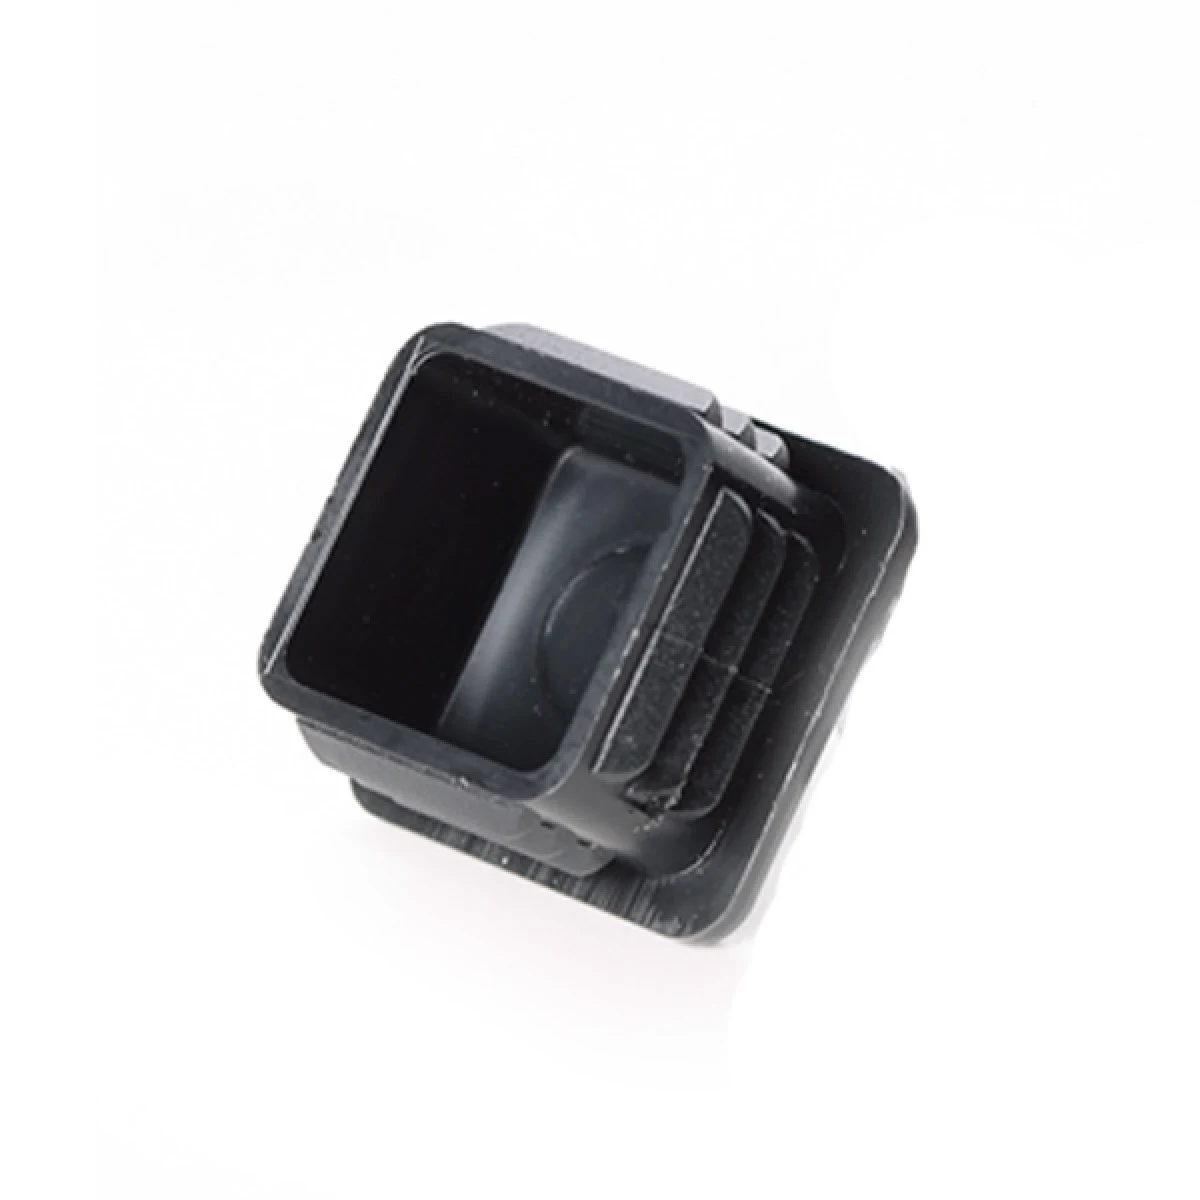 Square Plastic Internal Tube Insert - Black 13mm